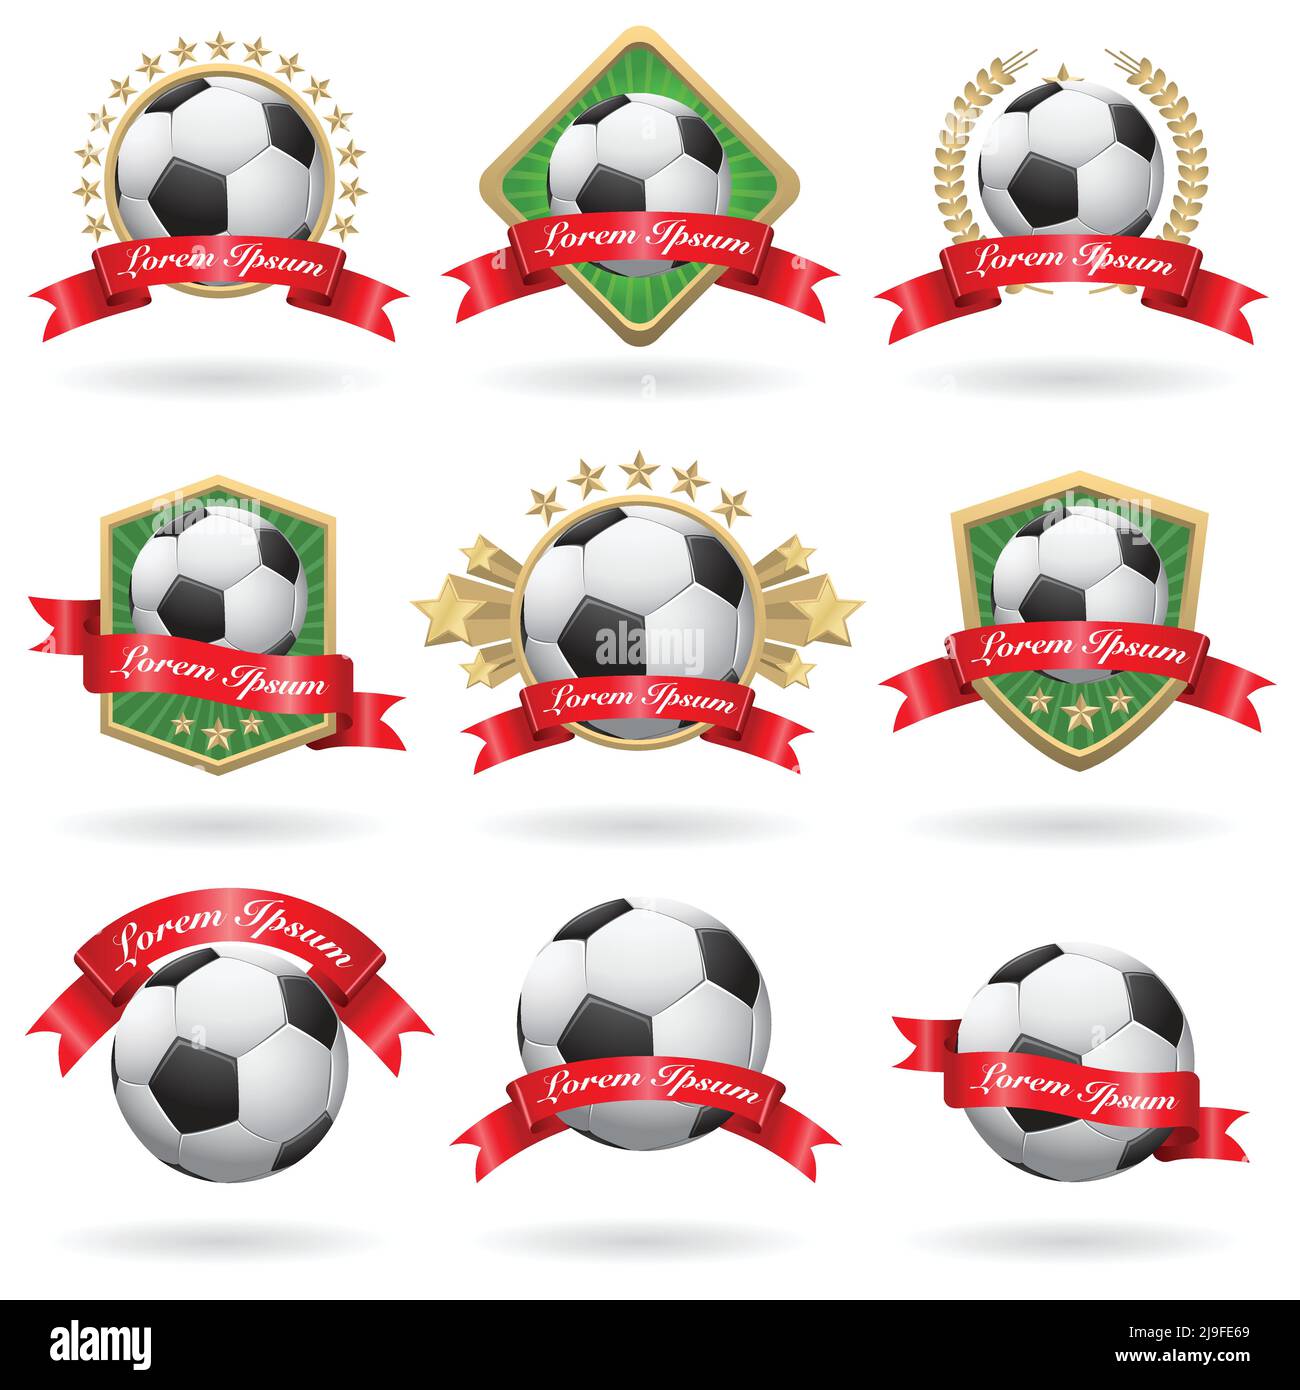 soccer logo design clipart